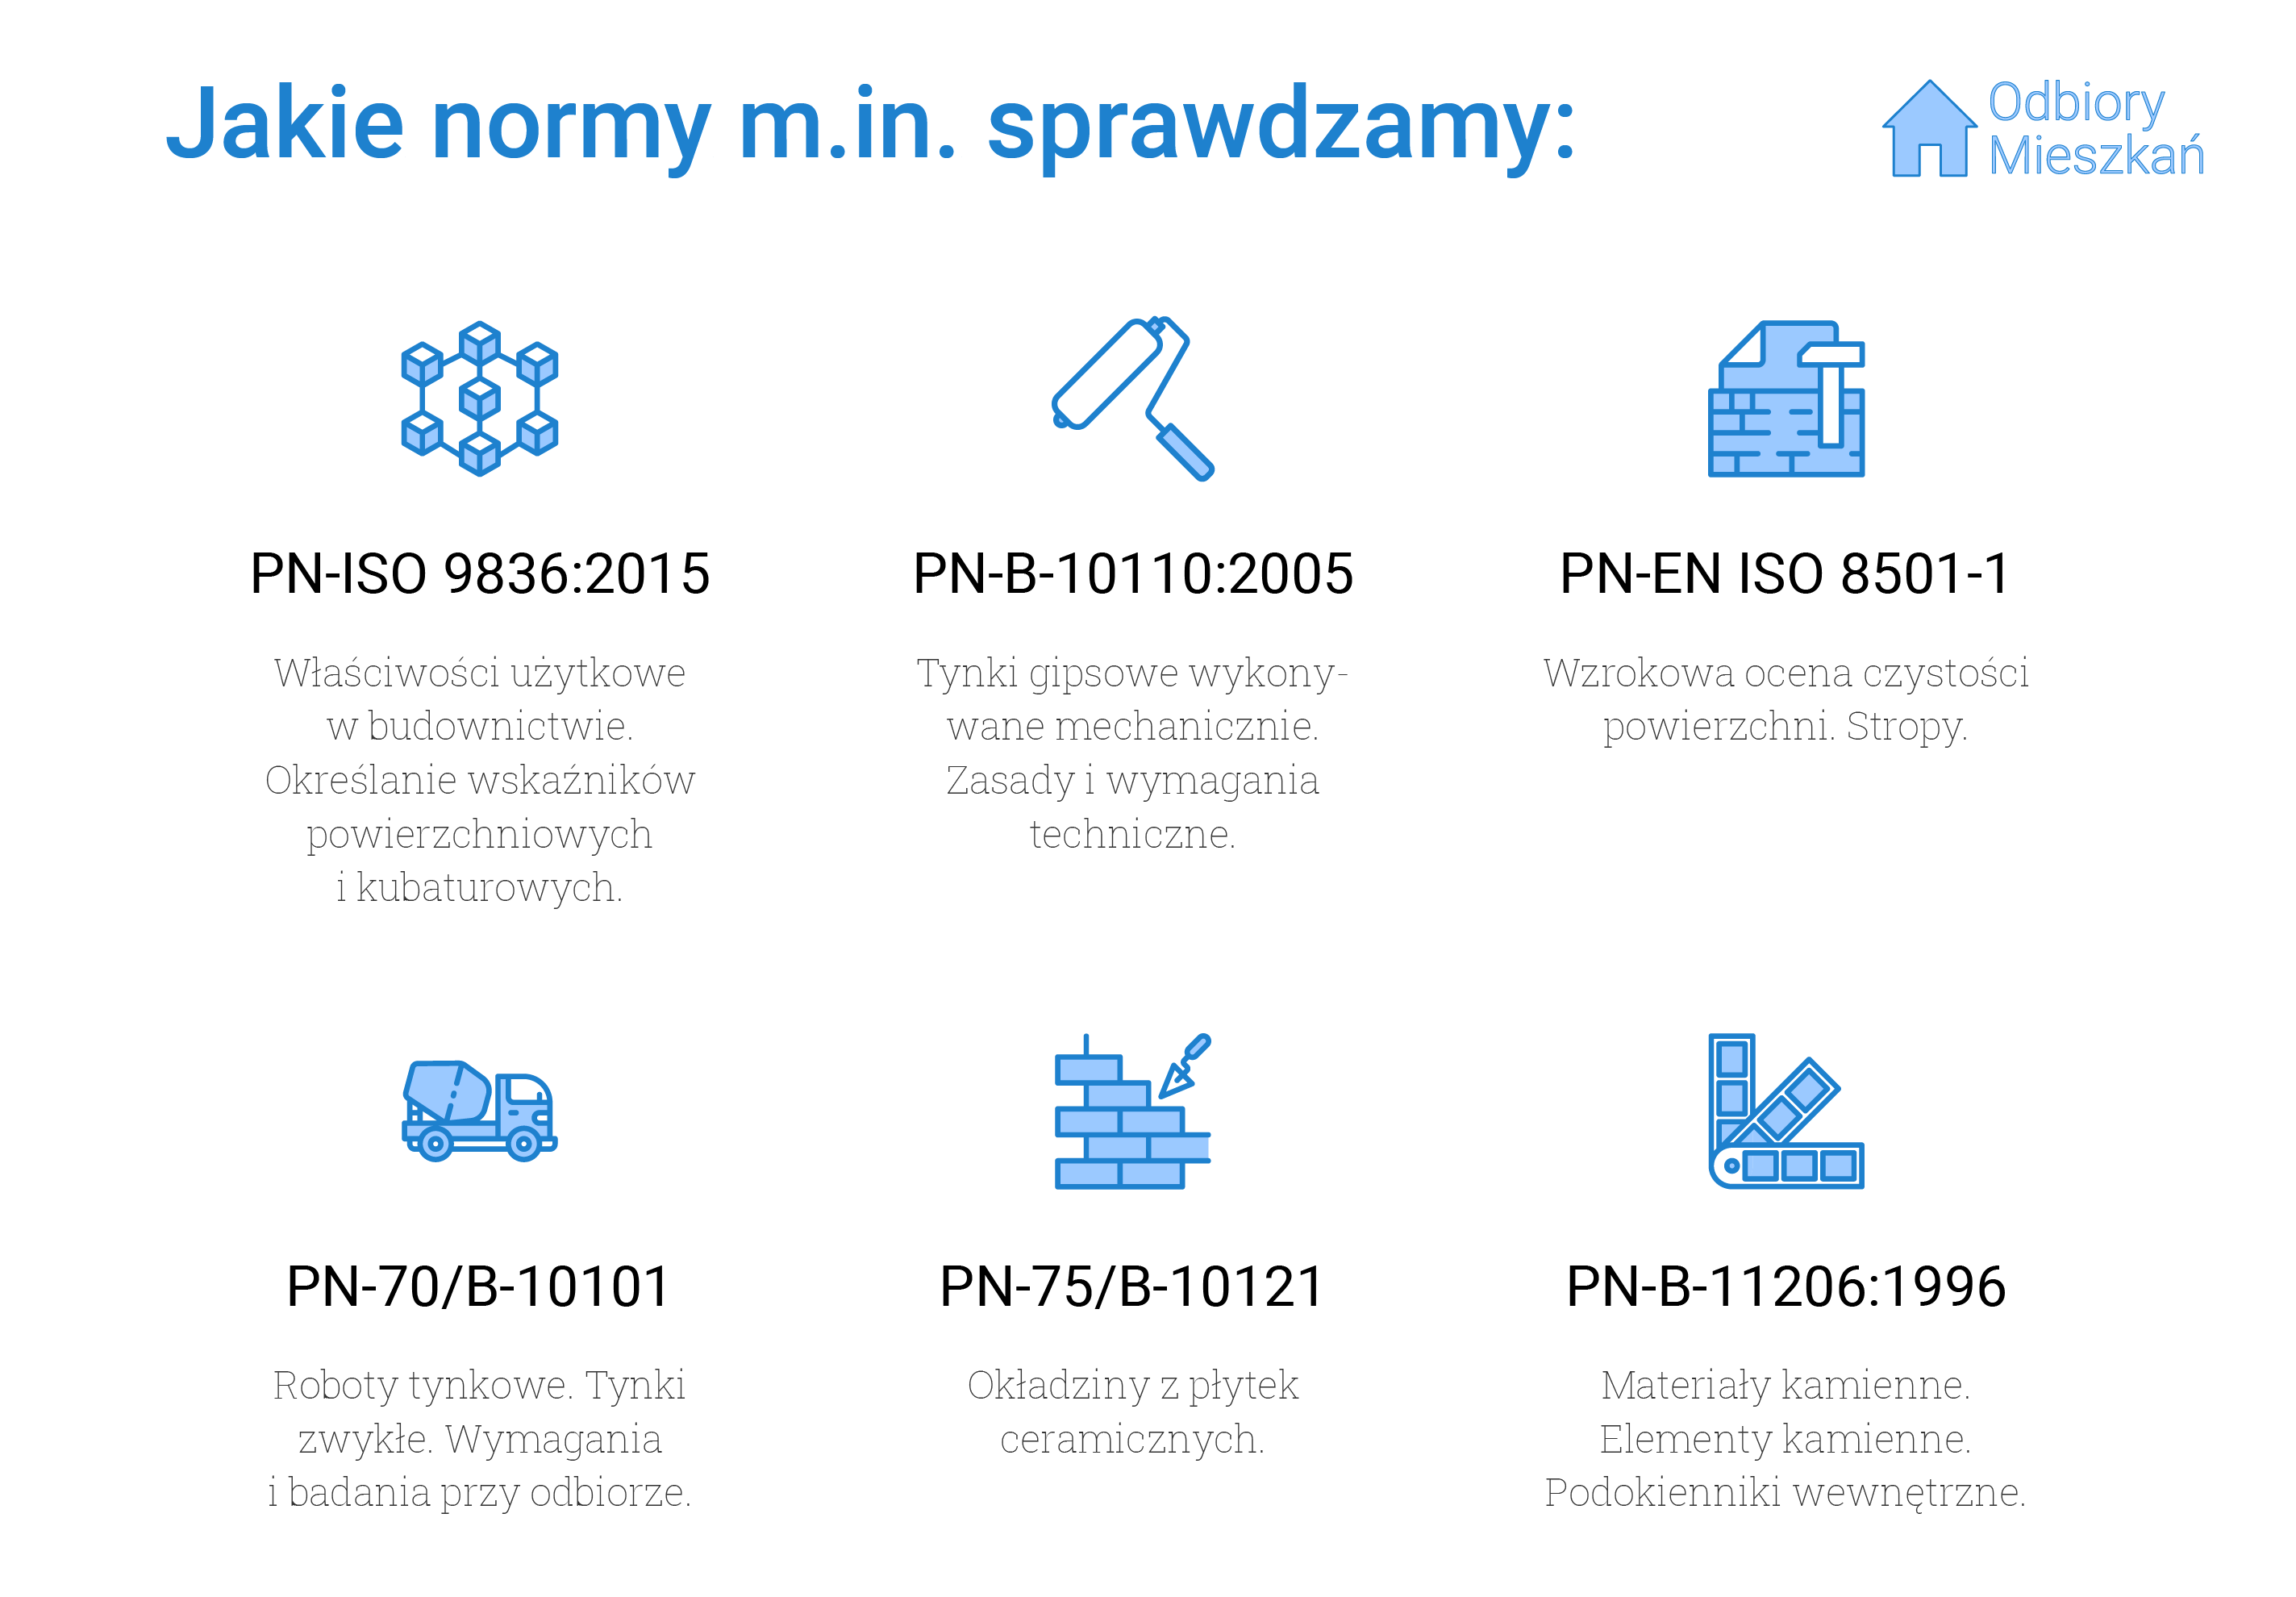 Normy, jakie sprawdzamy podczas odbioru technicznego w Szczecinie: PN-ISO 9836:2015 - właściwości użytkowe w budownictwie i określanie wskaźników powierzchni kubaturowych, PN-B-10110:2005 - tynki gipsowe wykonywane mechanicznie oraz zasady i wymagania techniczne wykonywania tynków, PN-EN ISO 8501-1, czyli wzrokowa ocena czystości powierzchni oraz stropy, PN-70/B-10101 - roboty tynkowe, tynki zwykłe oraz wymagania przy odbiorze tynków, PN-75/B10121, czyli okładziny z płytek ceramicznych oraz PN-B-11206:1996, czyli materiały i elementy kamienne oraz podokienniki wewnętrzne.